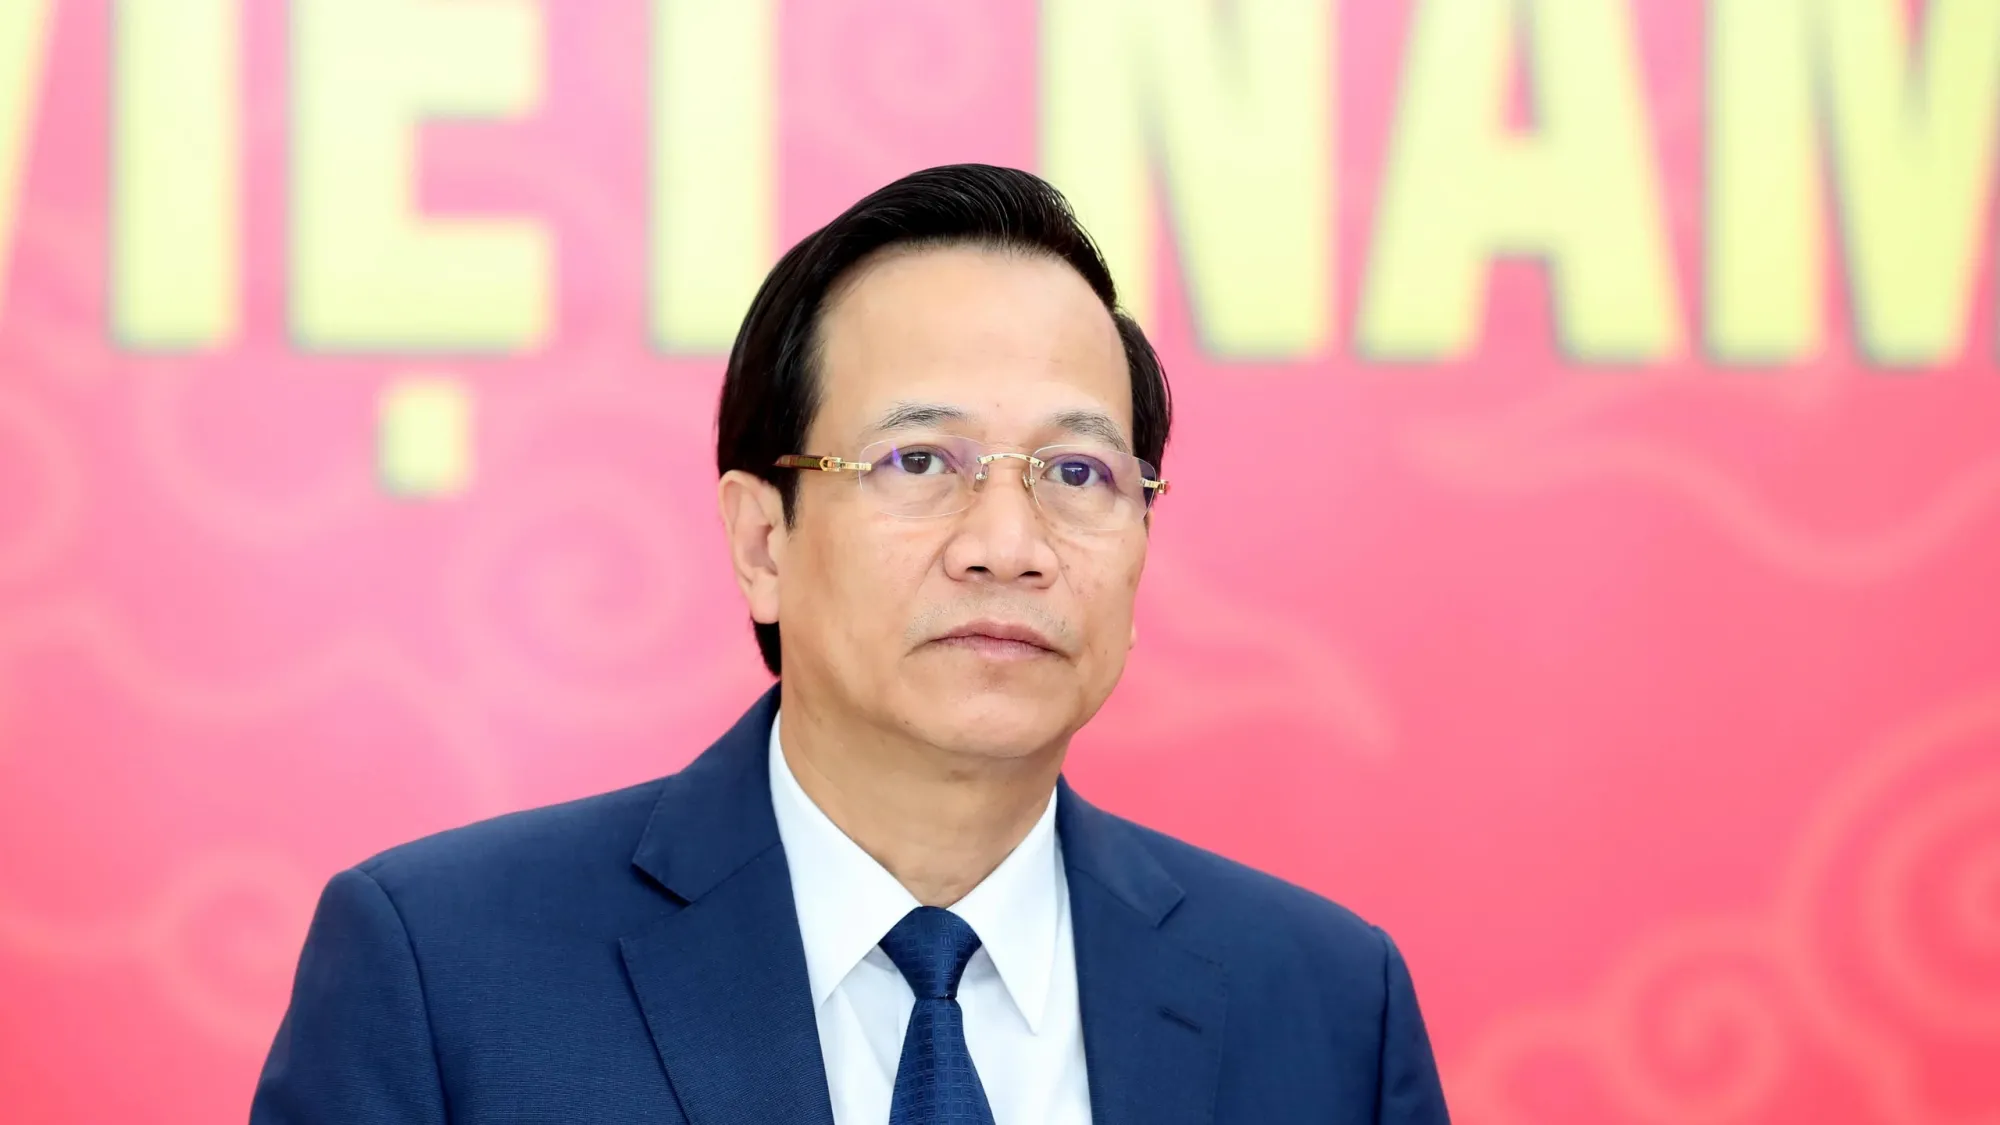 Bộ Chính trị đã quyết định kỷ luật khiển trách Bộ trưởng Đào Ngọc Dung